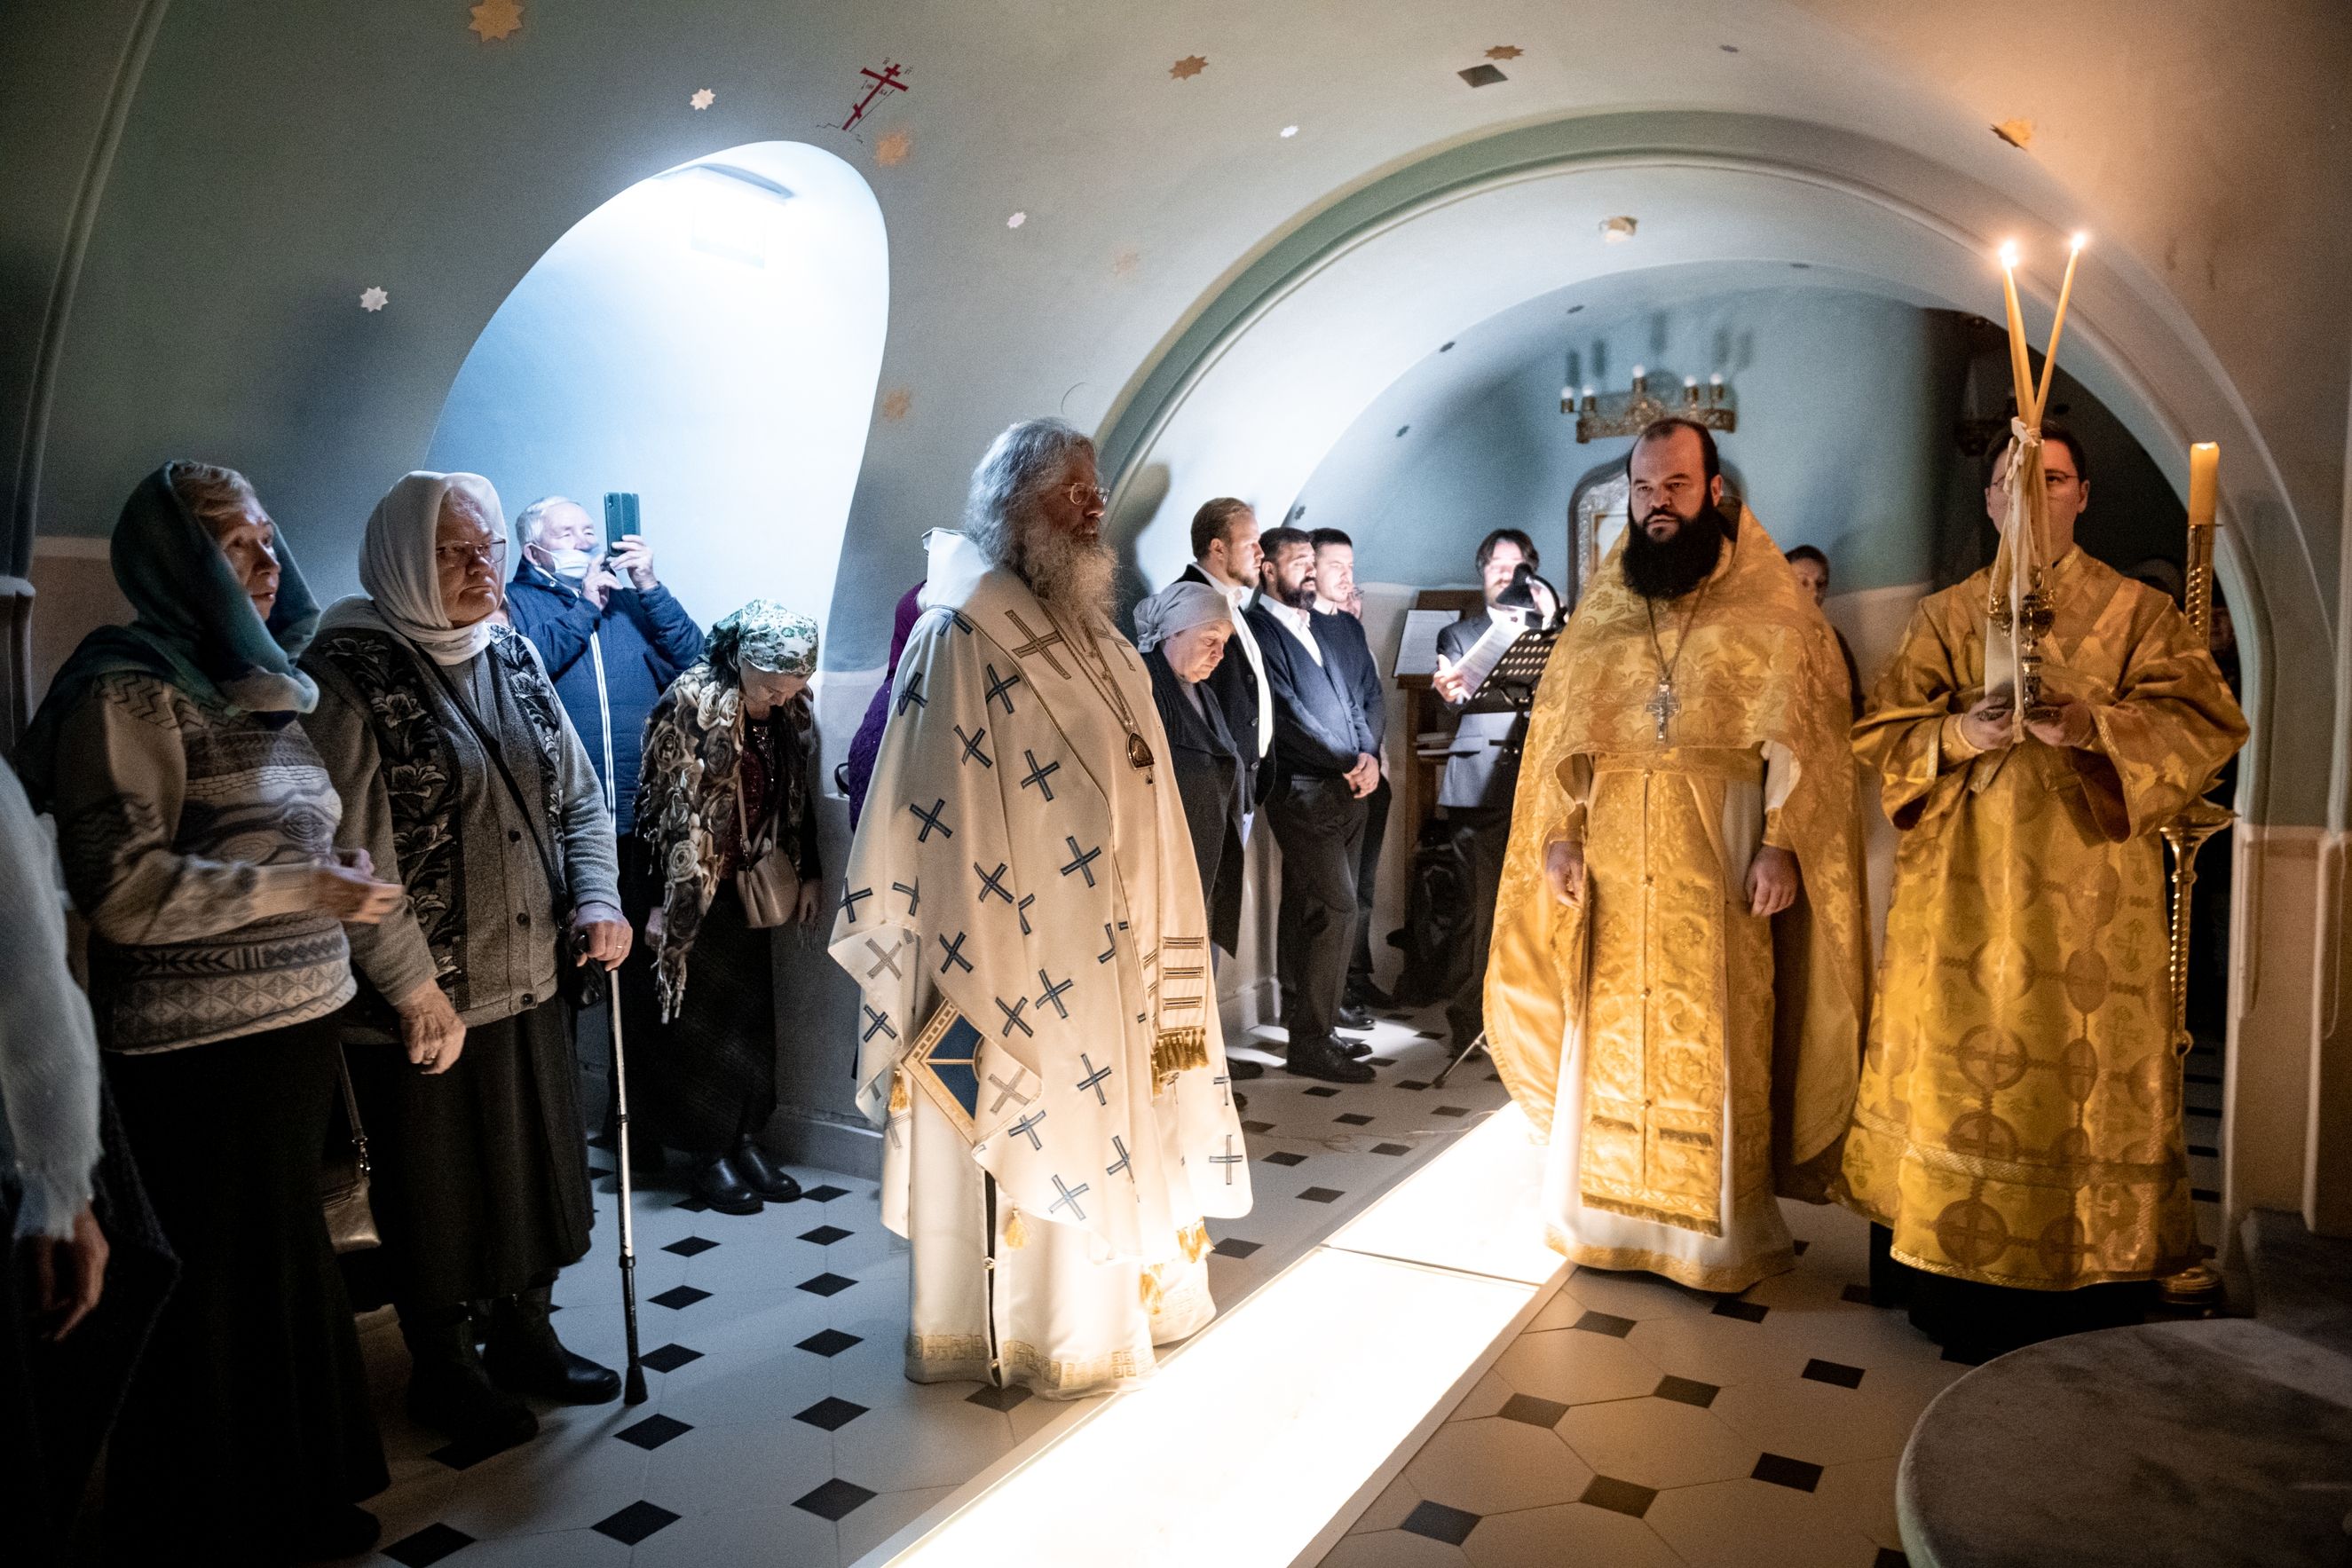 Митрополит Кирилл совершил Литургию в Пещерном храме Богородицкой обители Казани